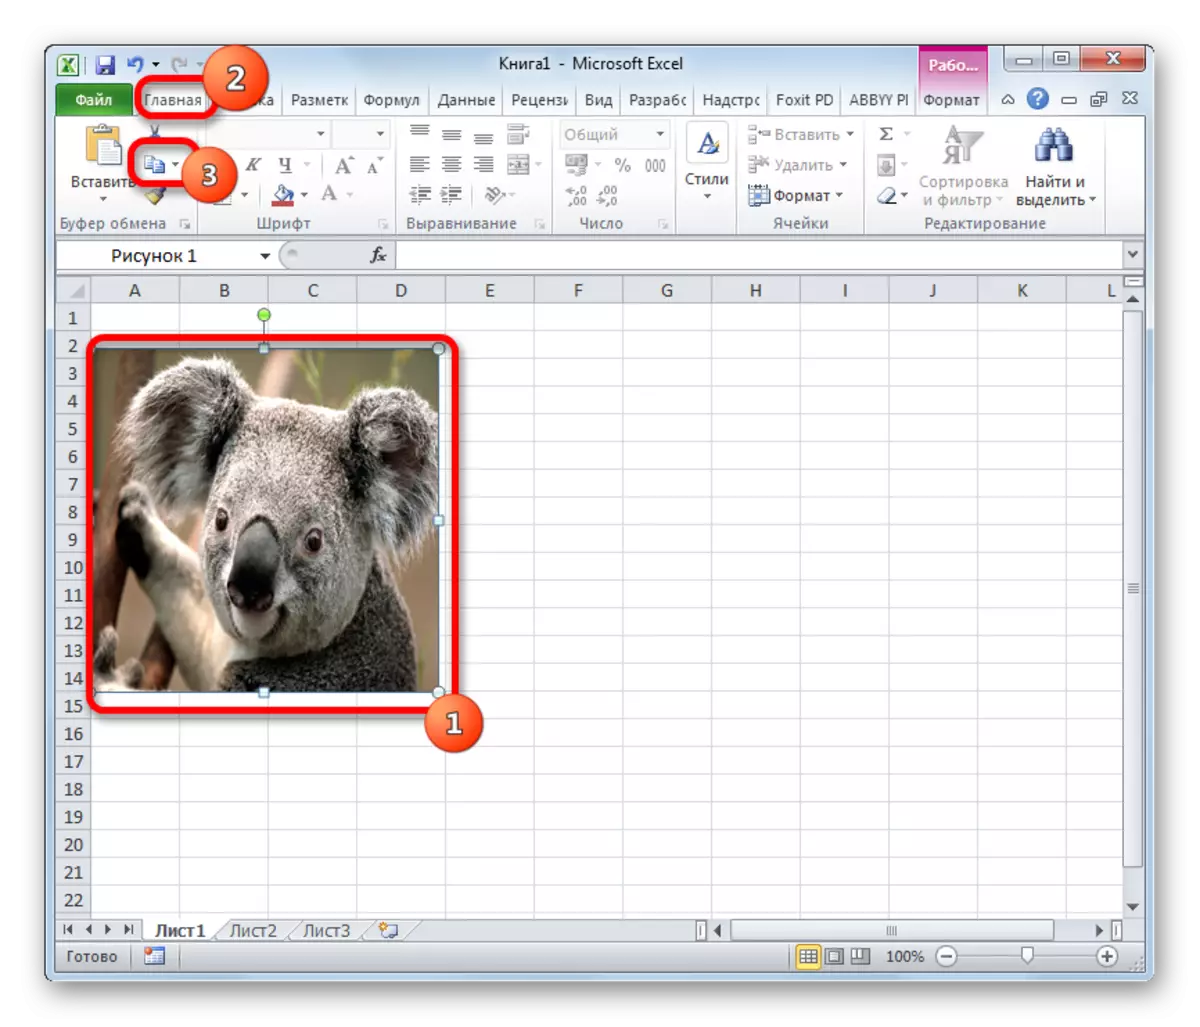 Copia a imaxe usando o botón de cinta en Microsoft Excel